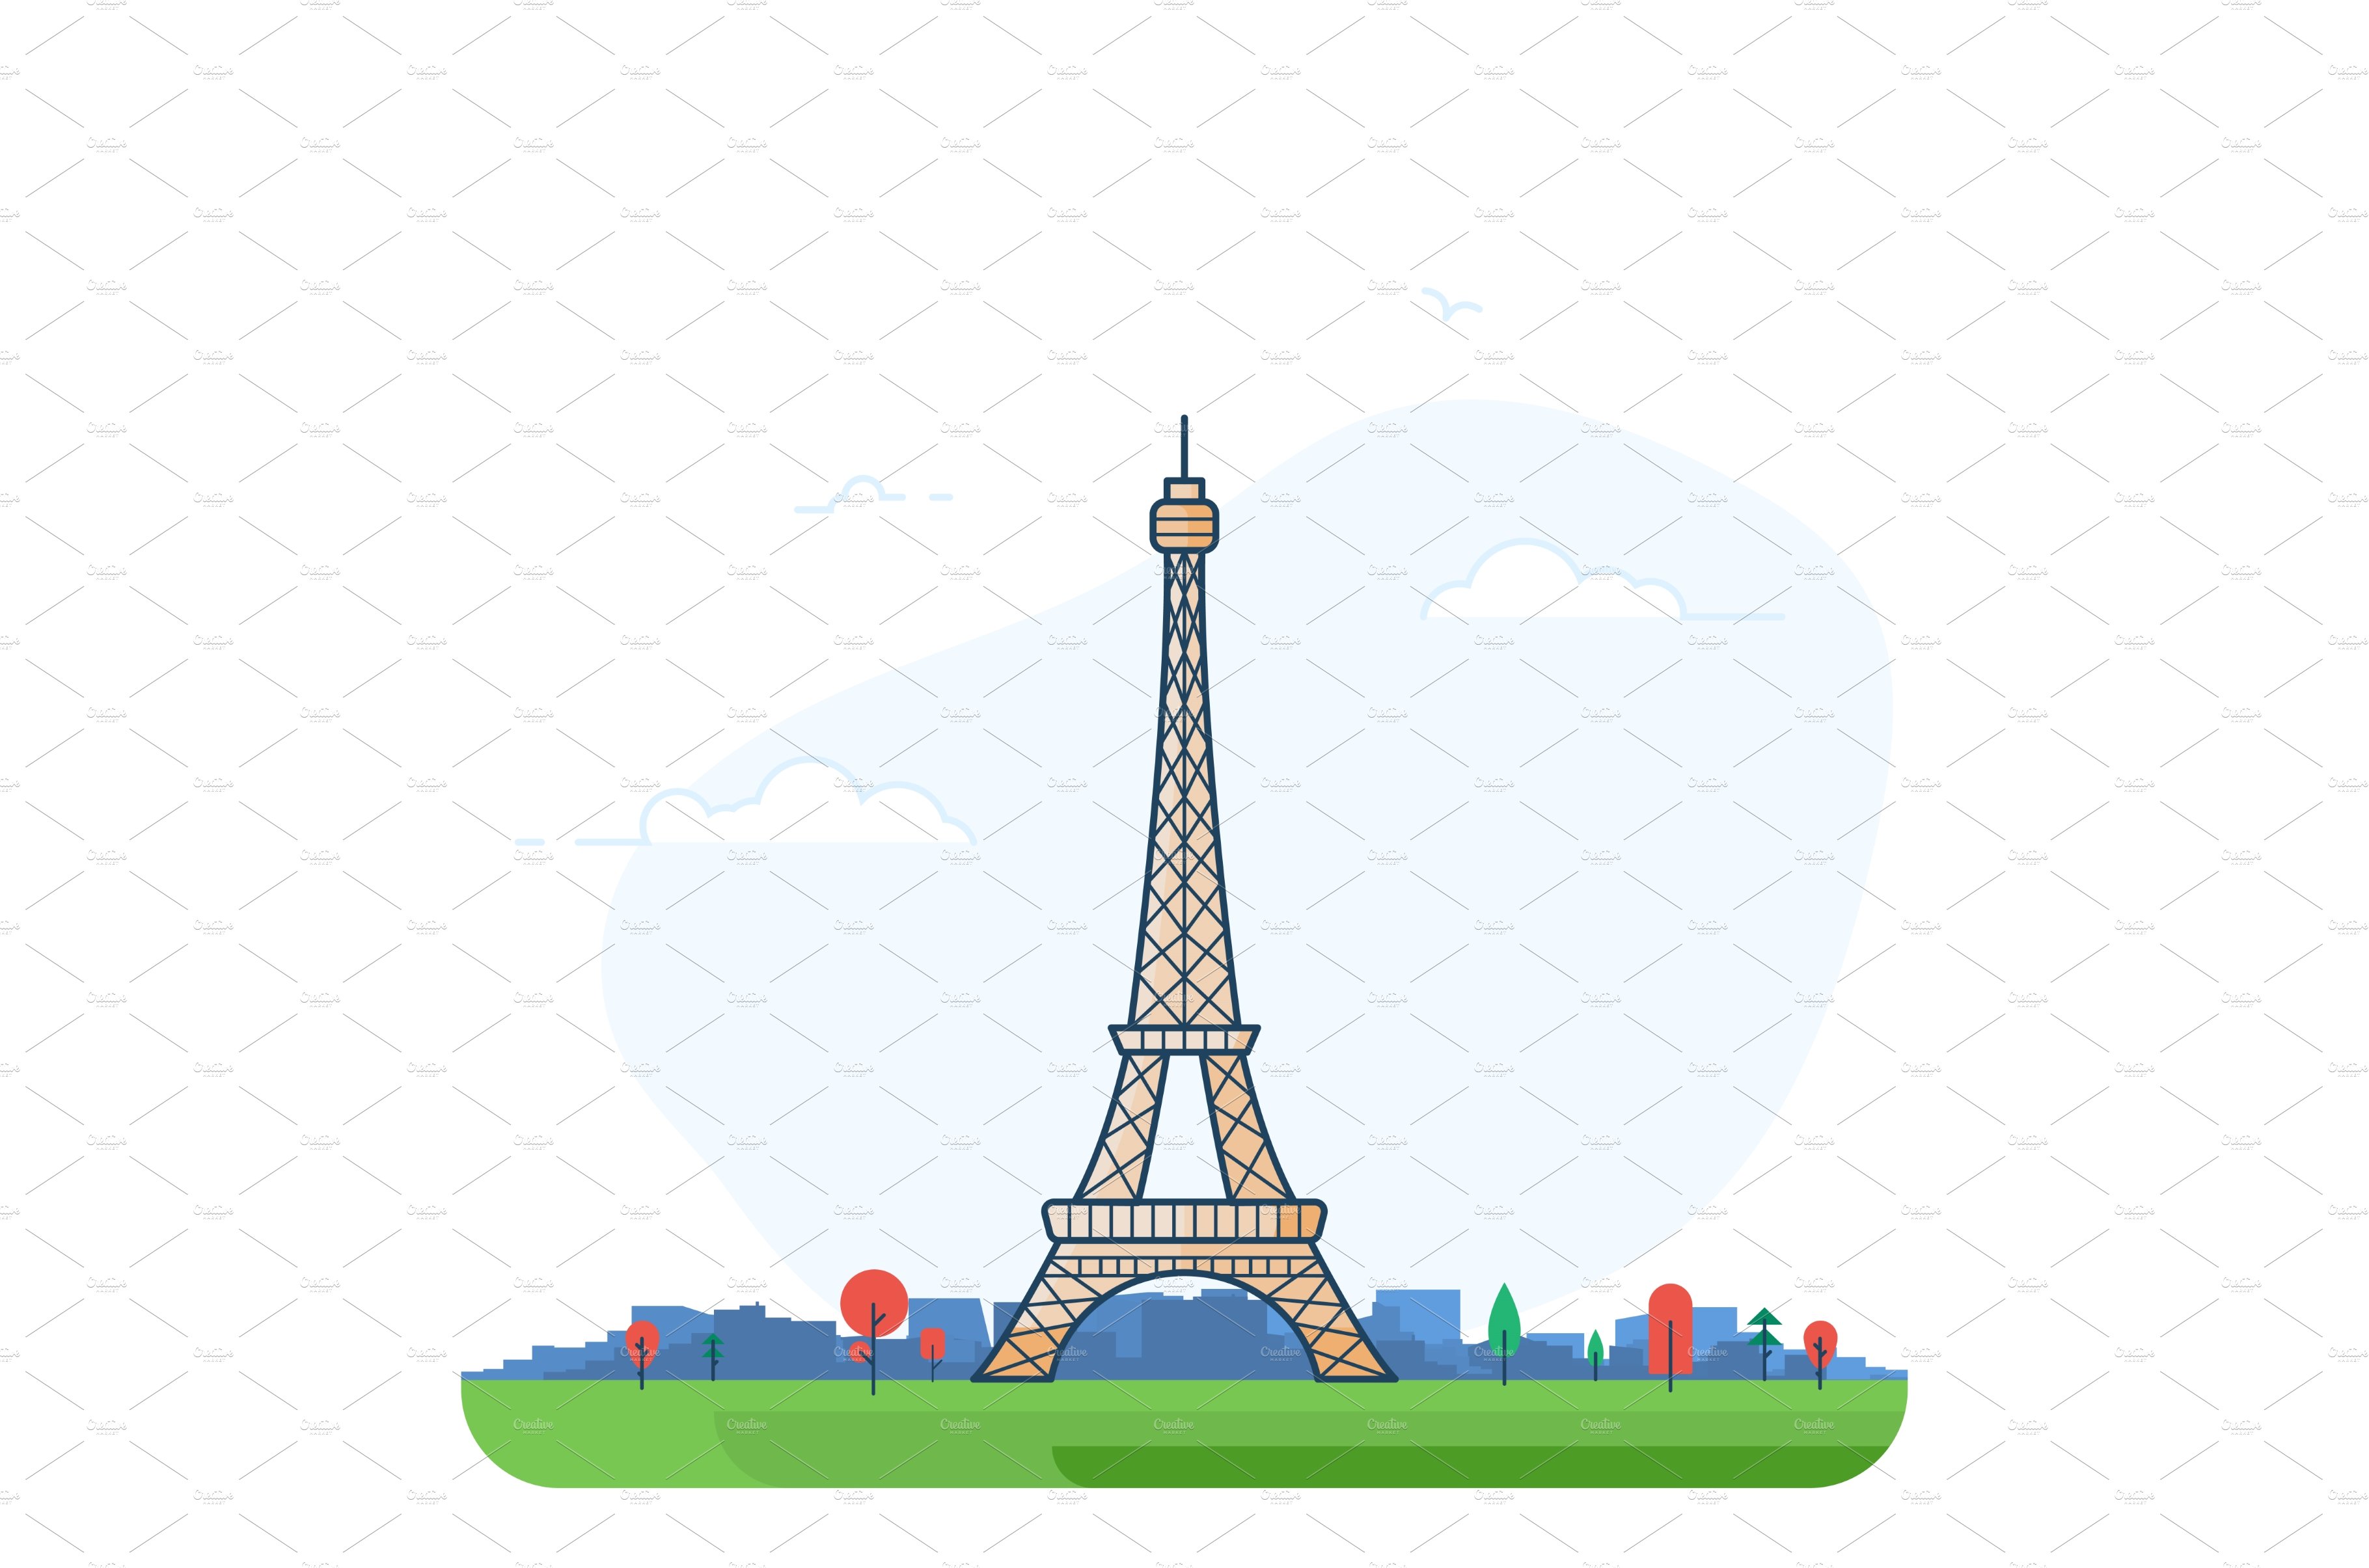 Paris Eiffel tower line style cover image.